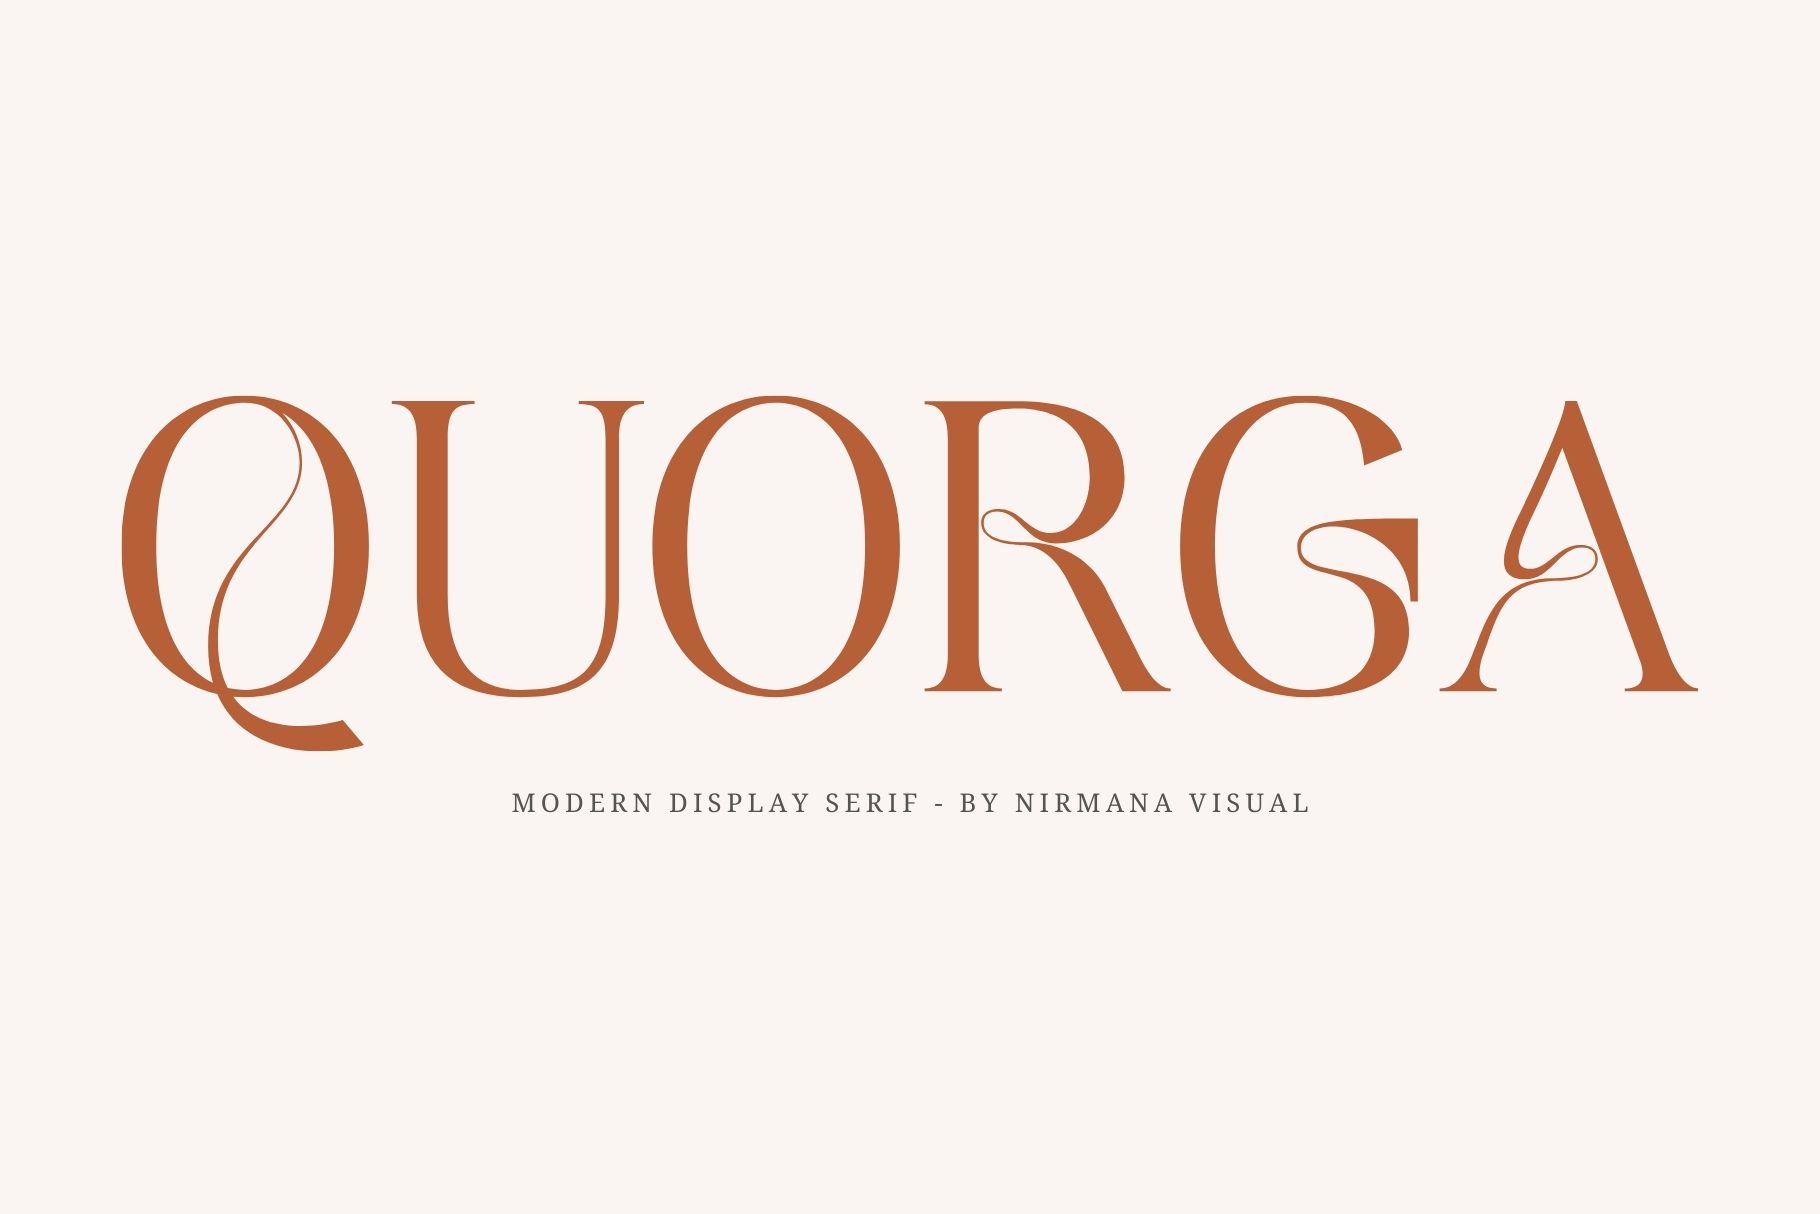 Quorga